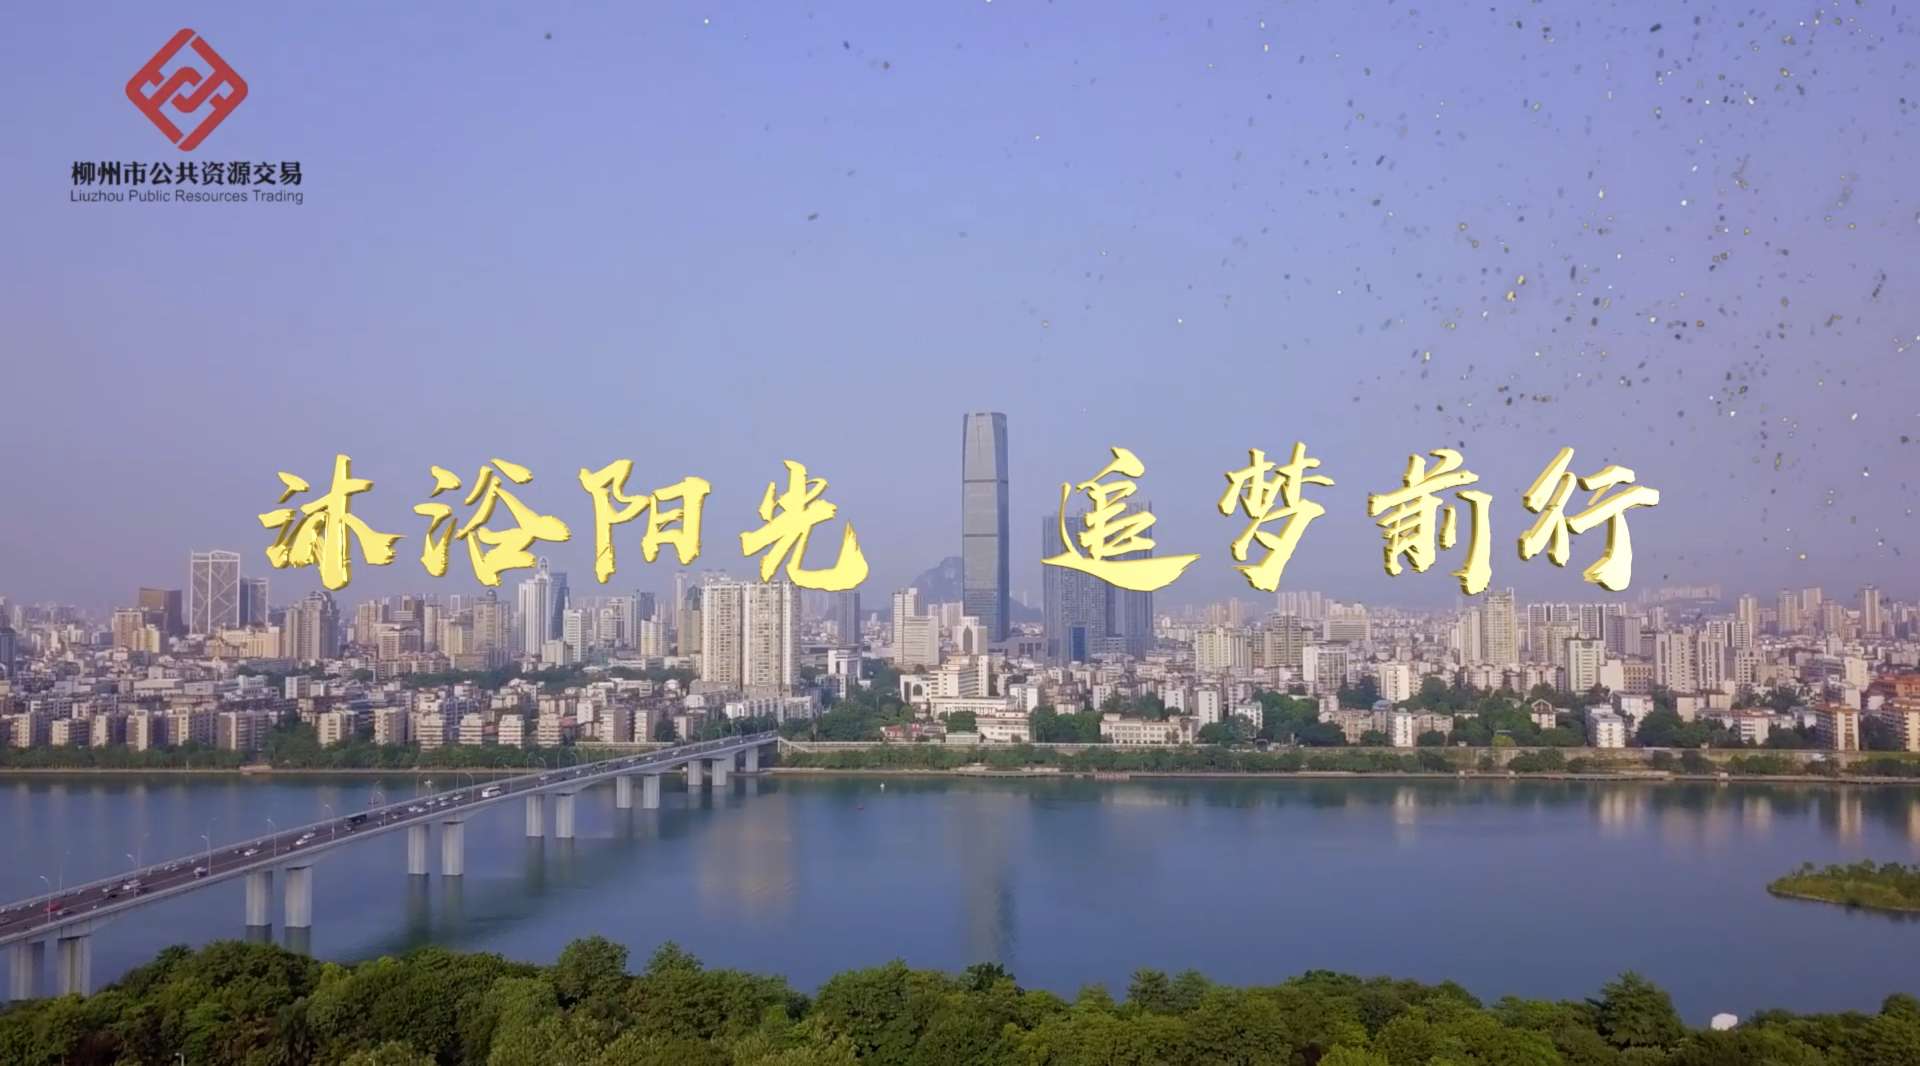 柳州市公共资源交易中心宣传片